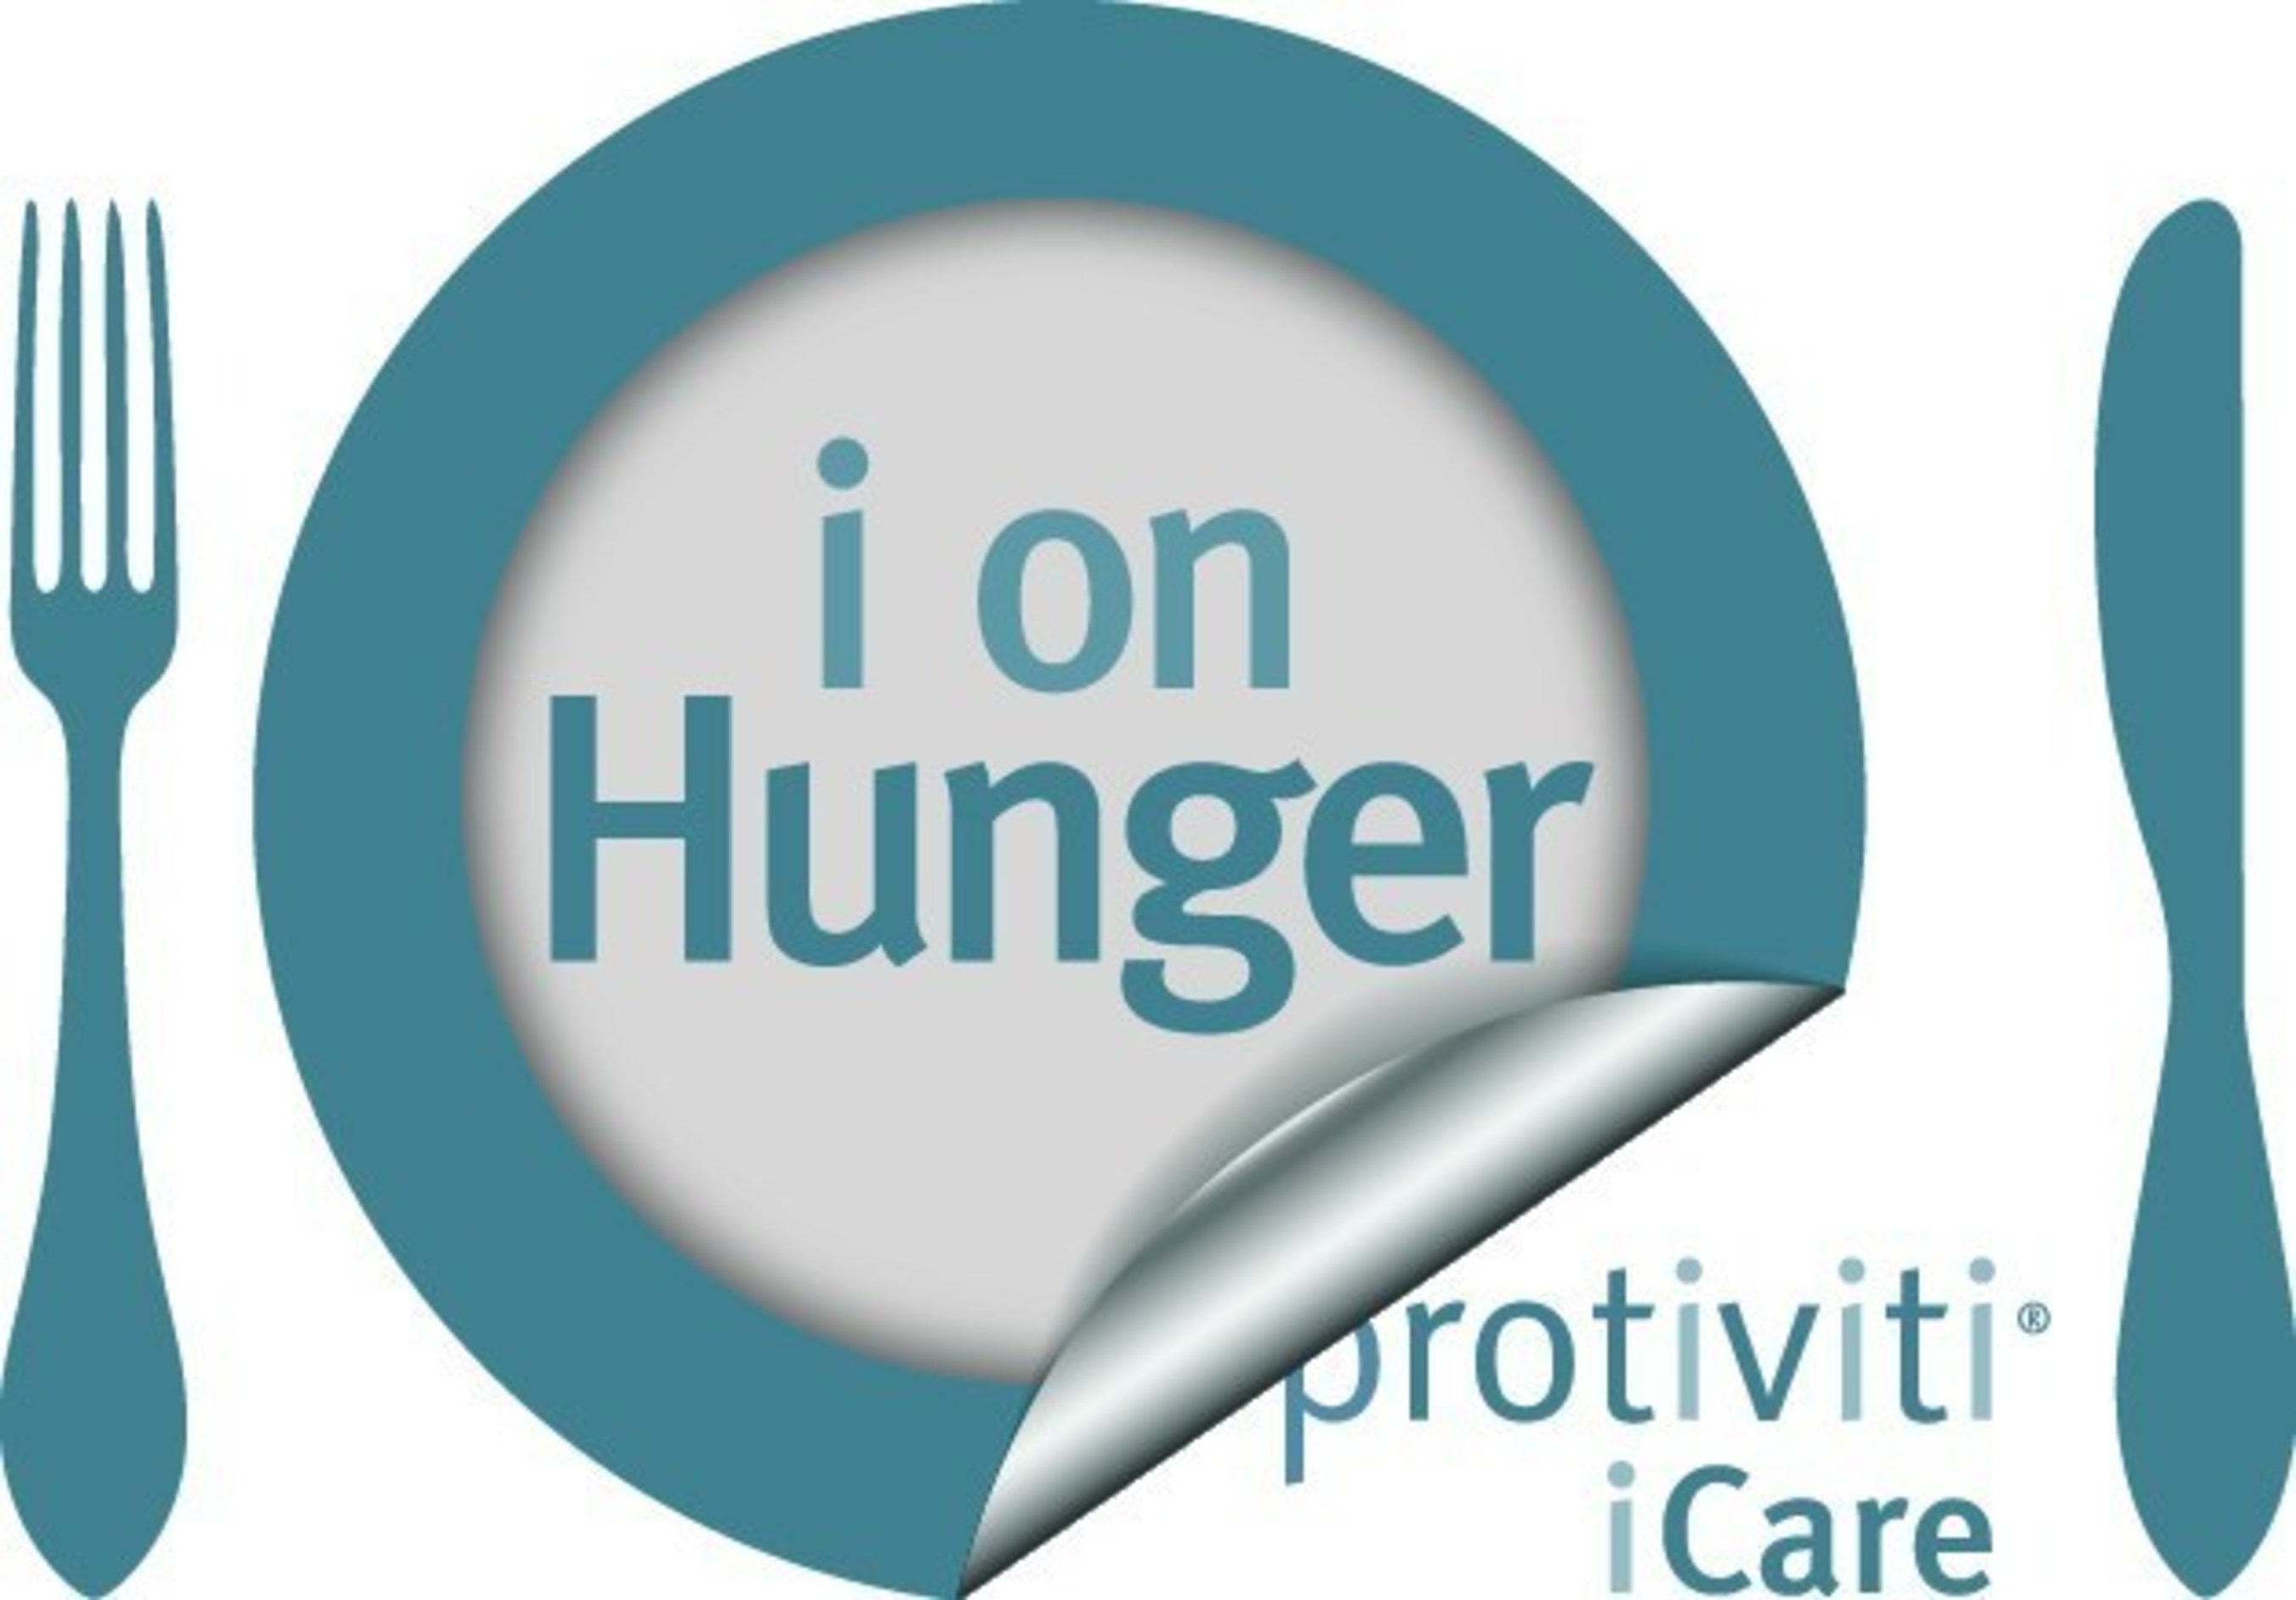 Protiviti's i on Hunger logo